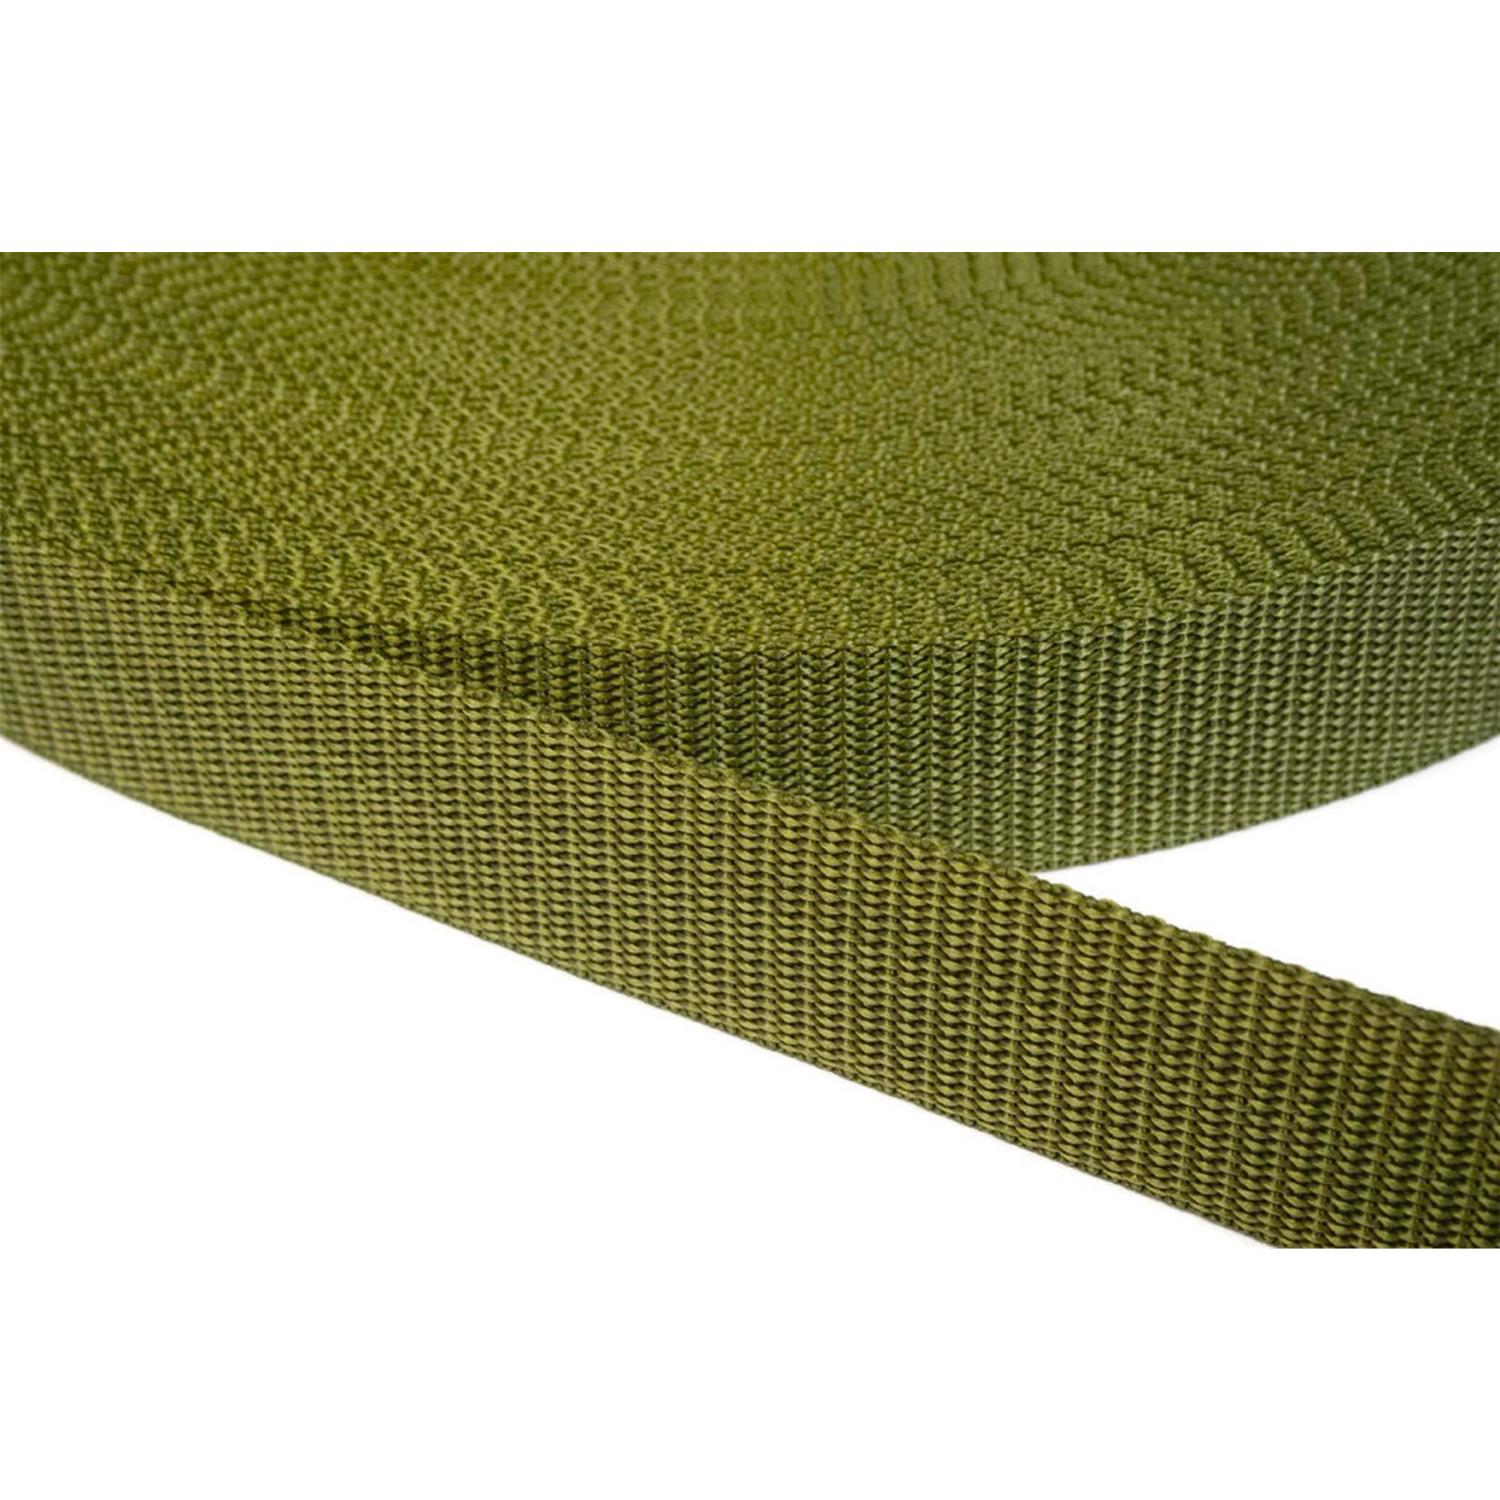 Gurtband 25mm breit aus Polypropylen in 41 Farben 43 - olivgrün 06 Meter